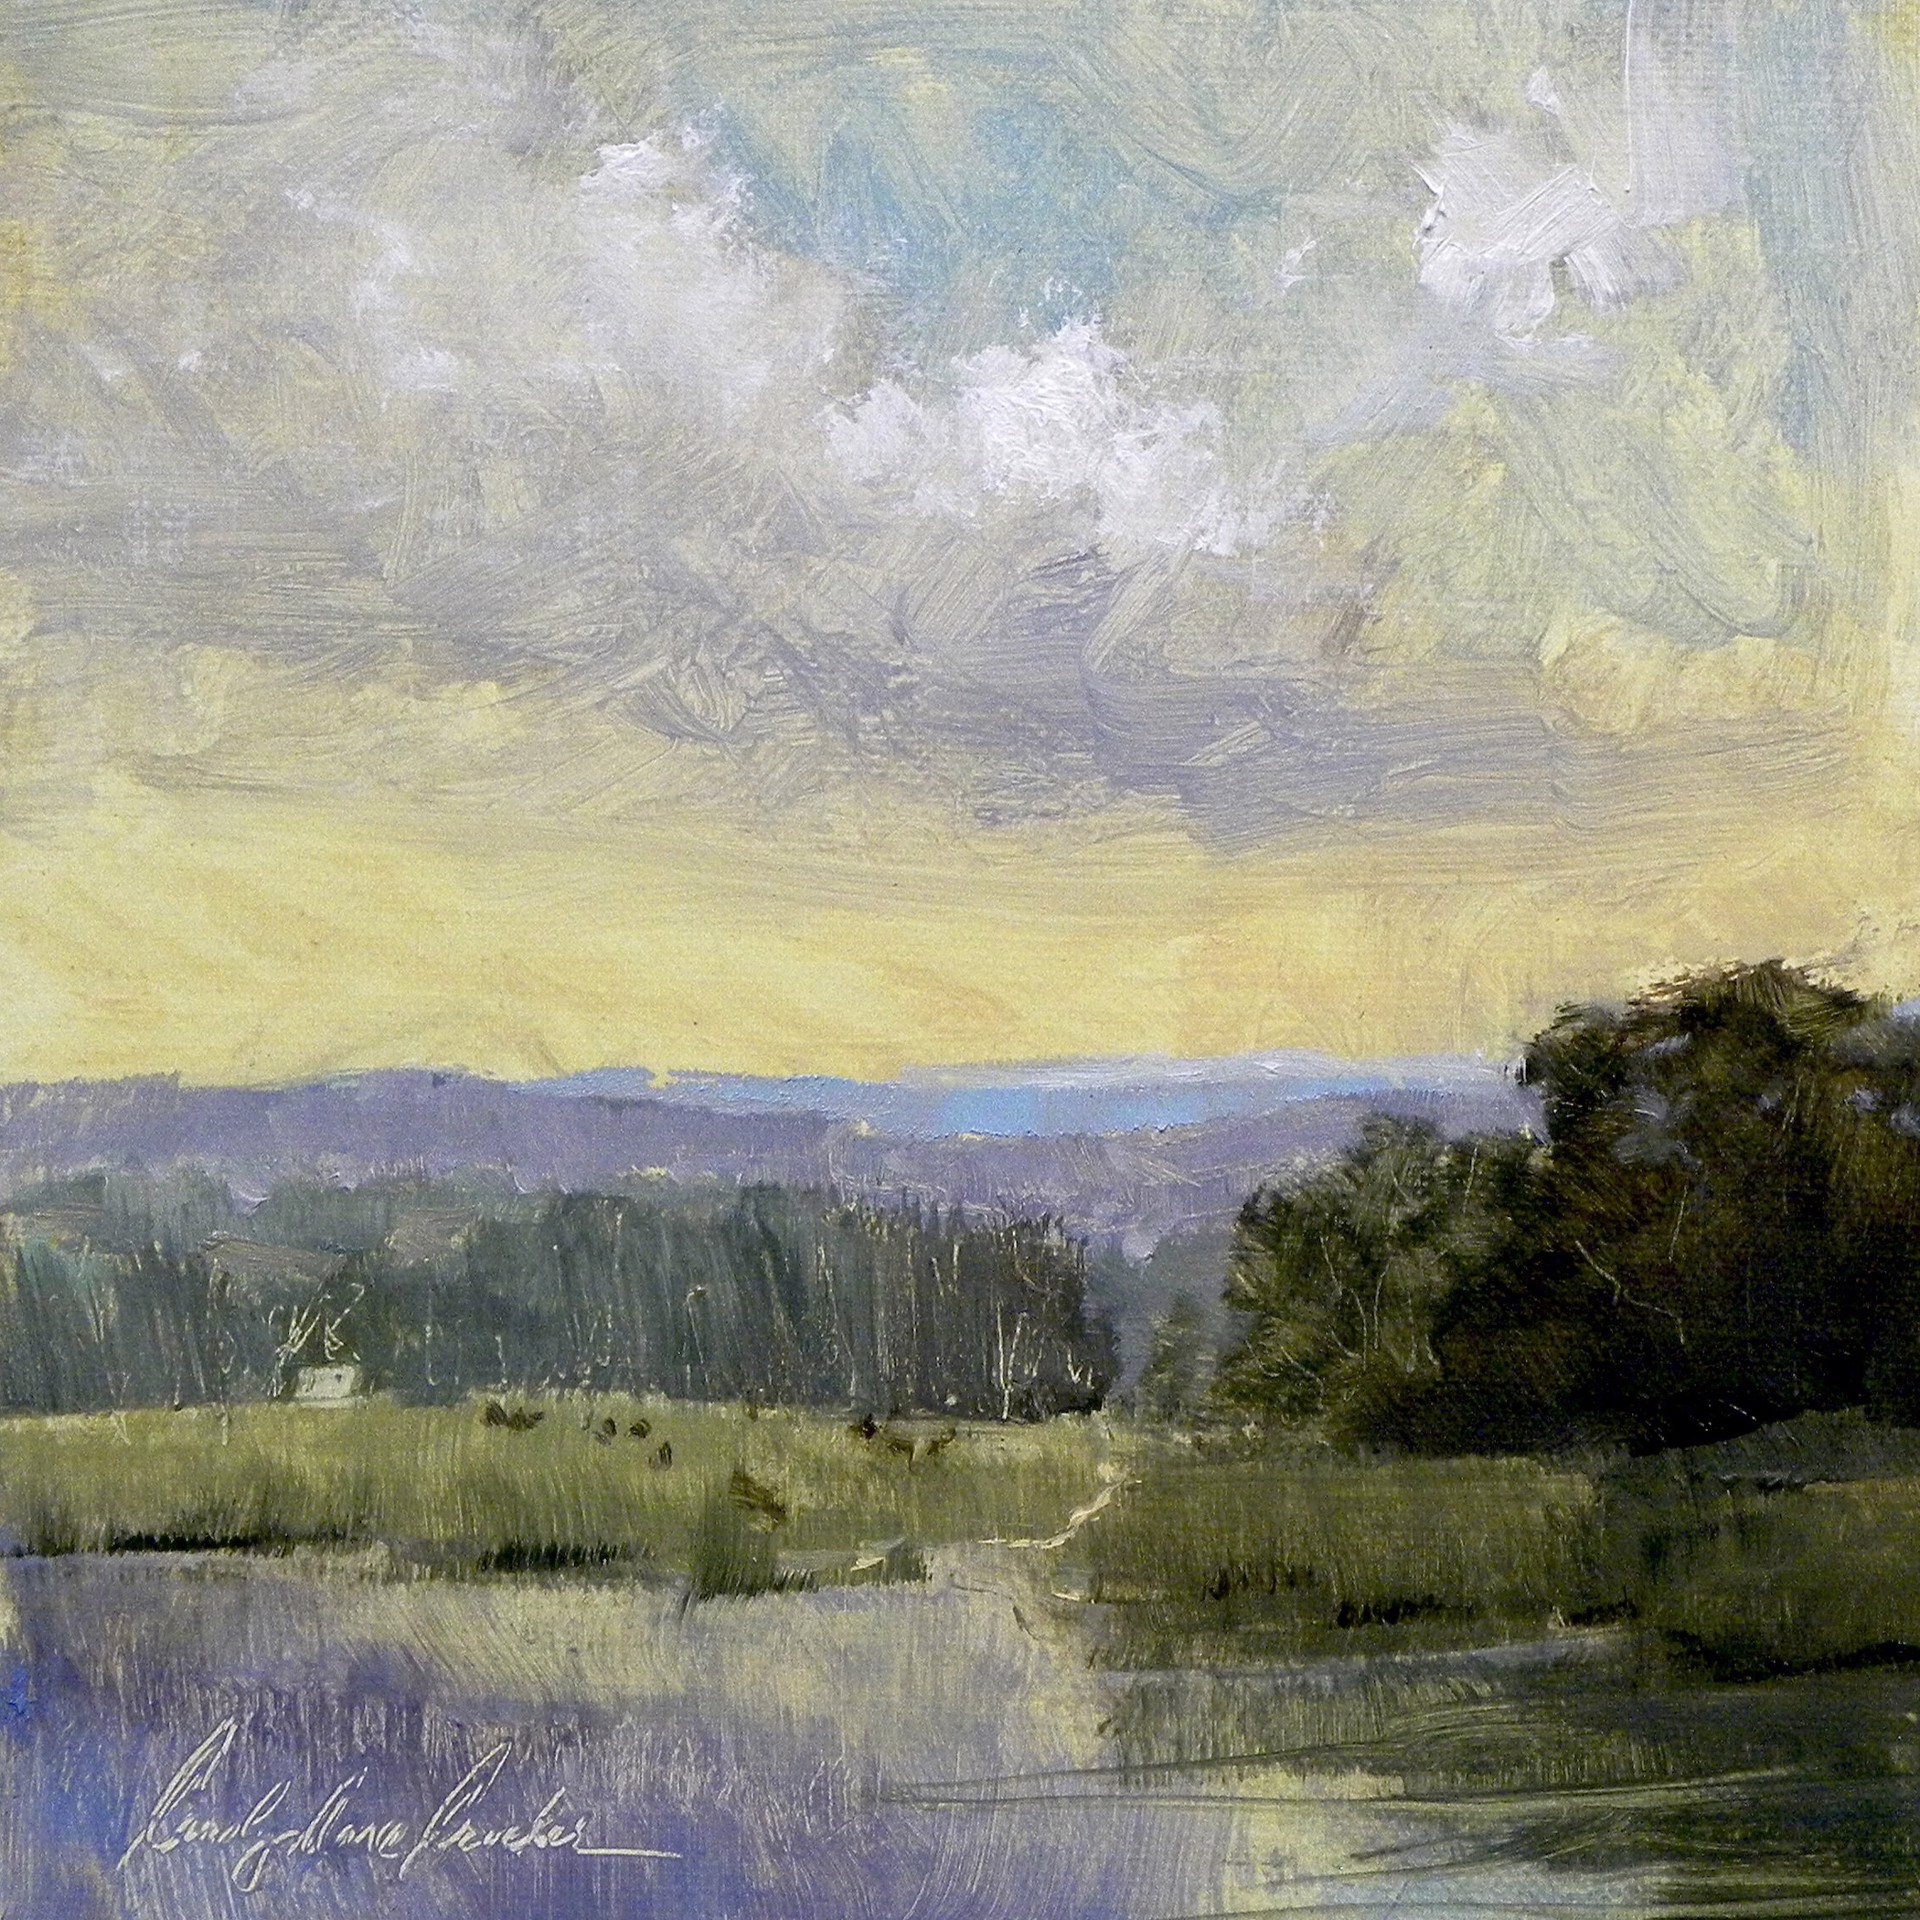 Appalachian Sky by Carolyn Crocker (Rue)